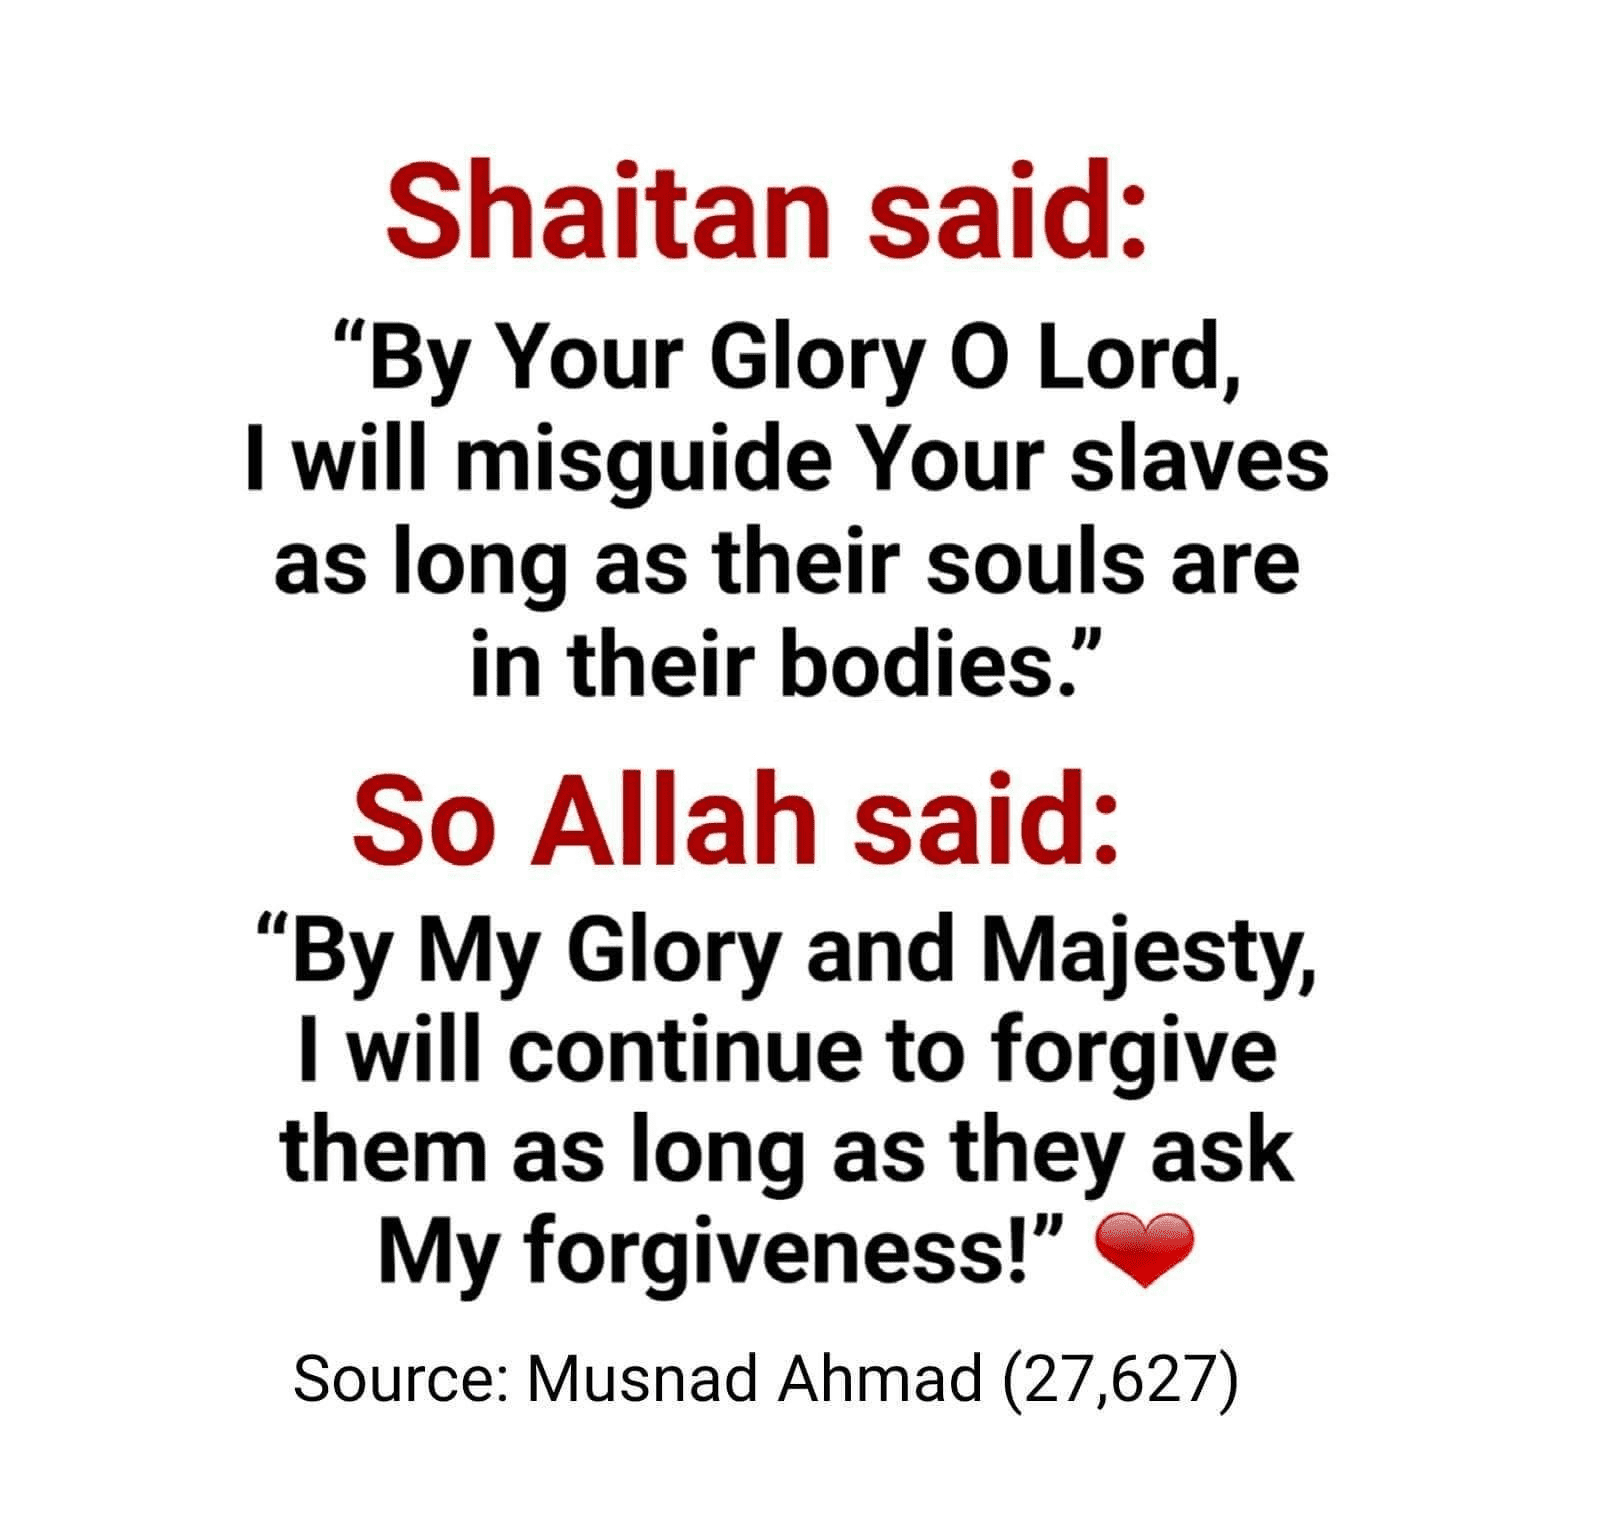 Shaitan Said, So Allah Said